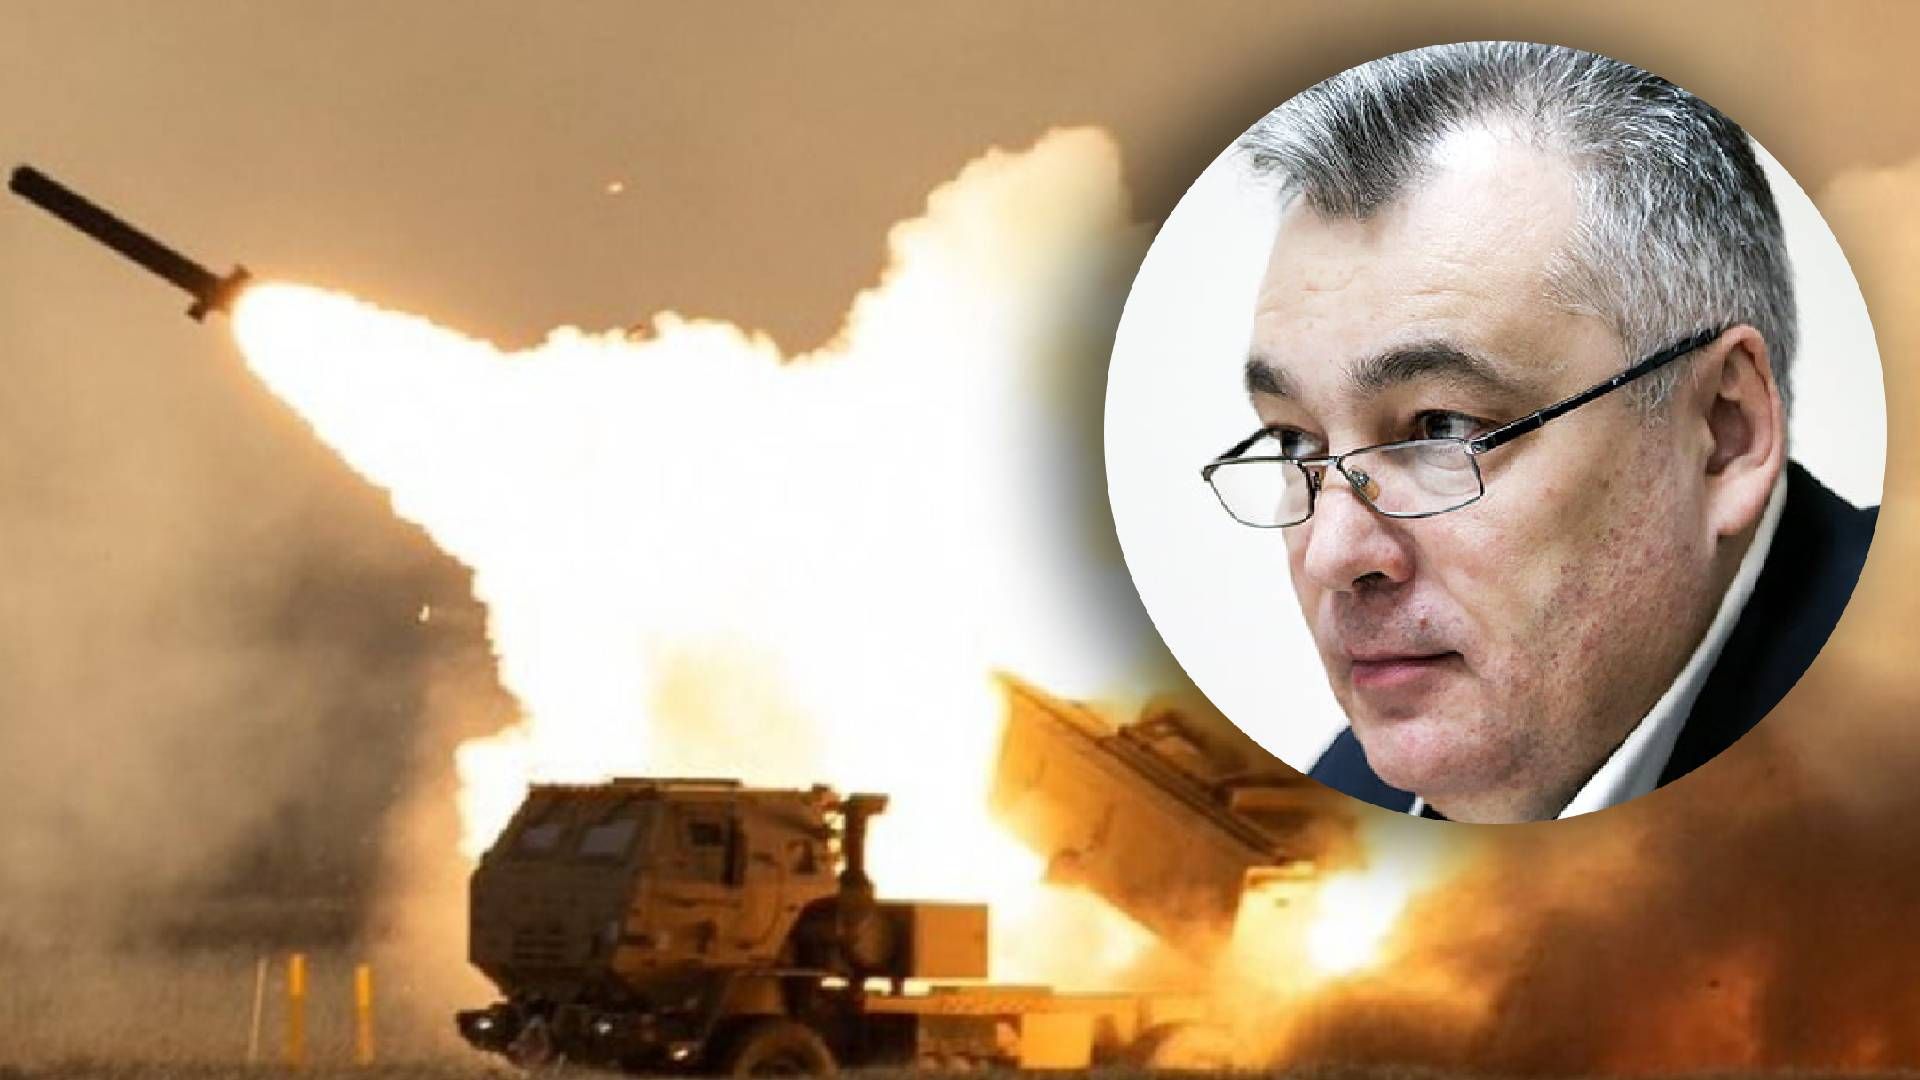 HIMARS відпрацювали по ворогу, – військовий експерт про причини масованого обстрілу України